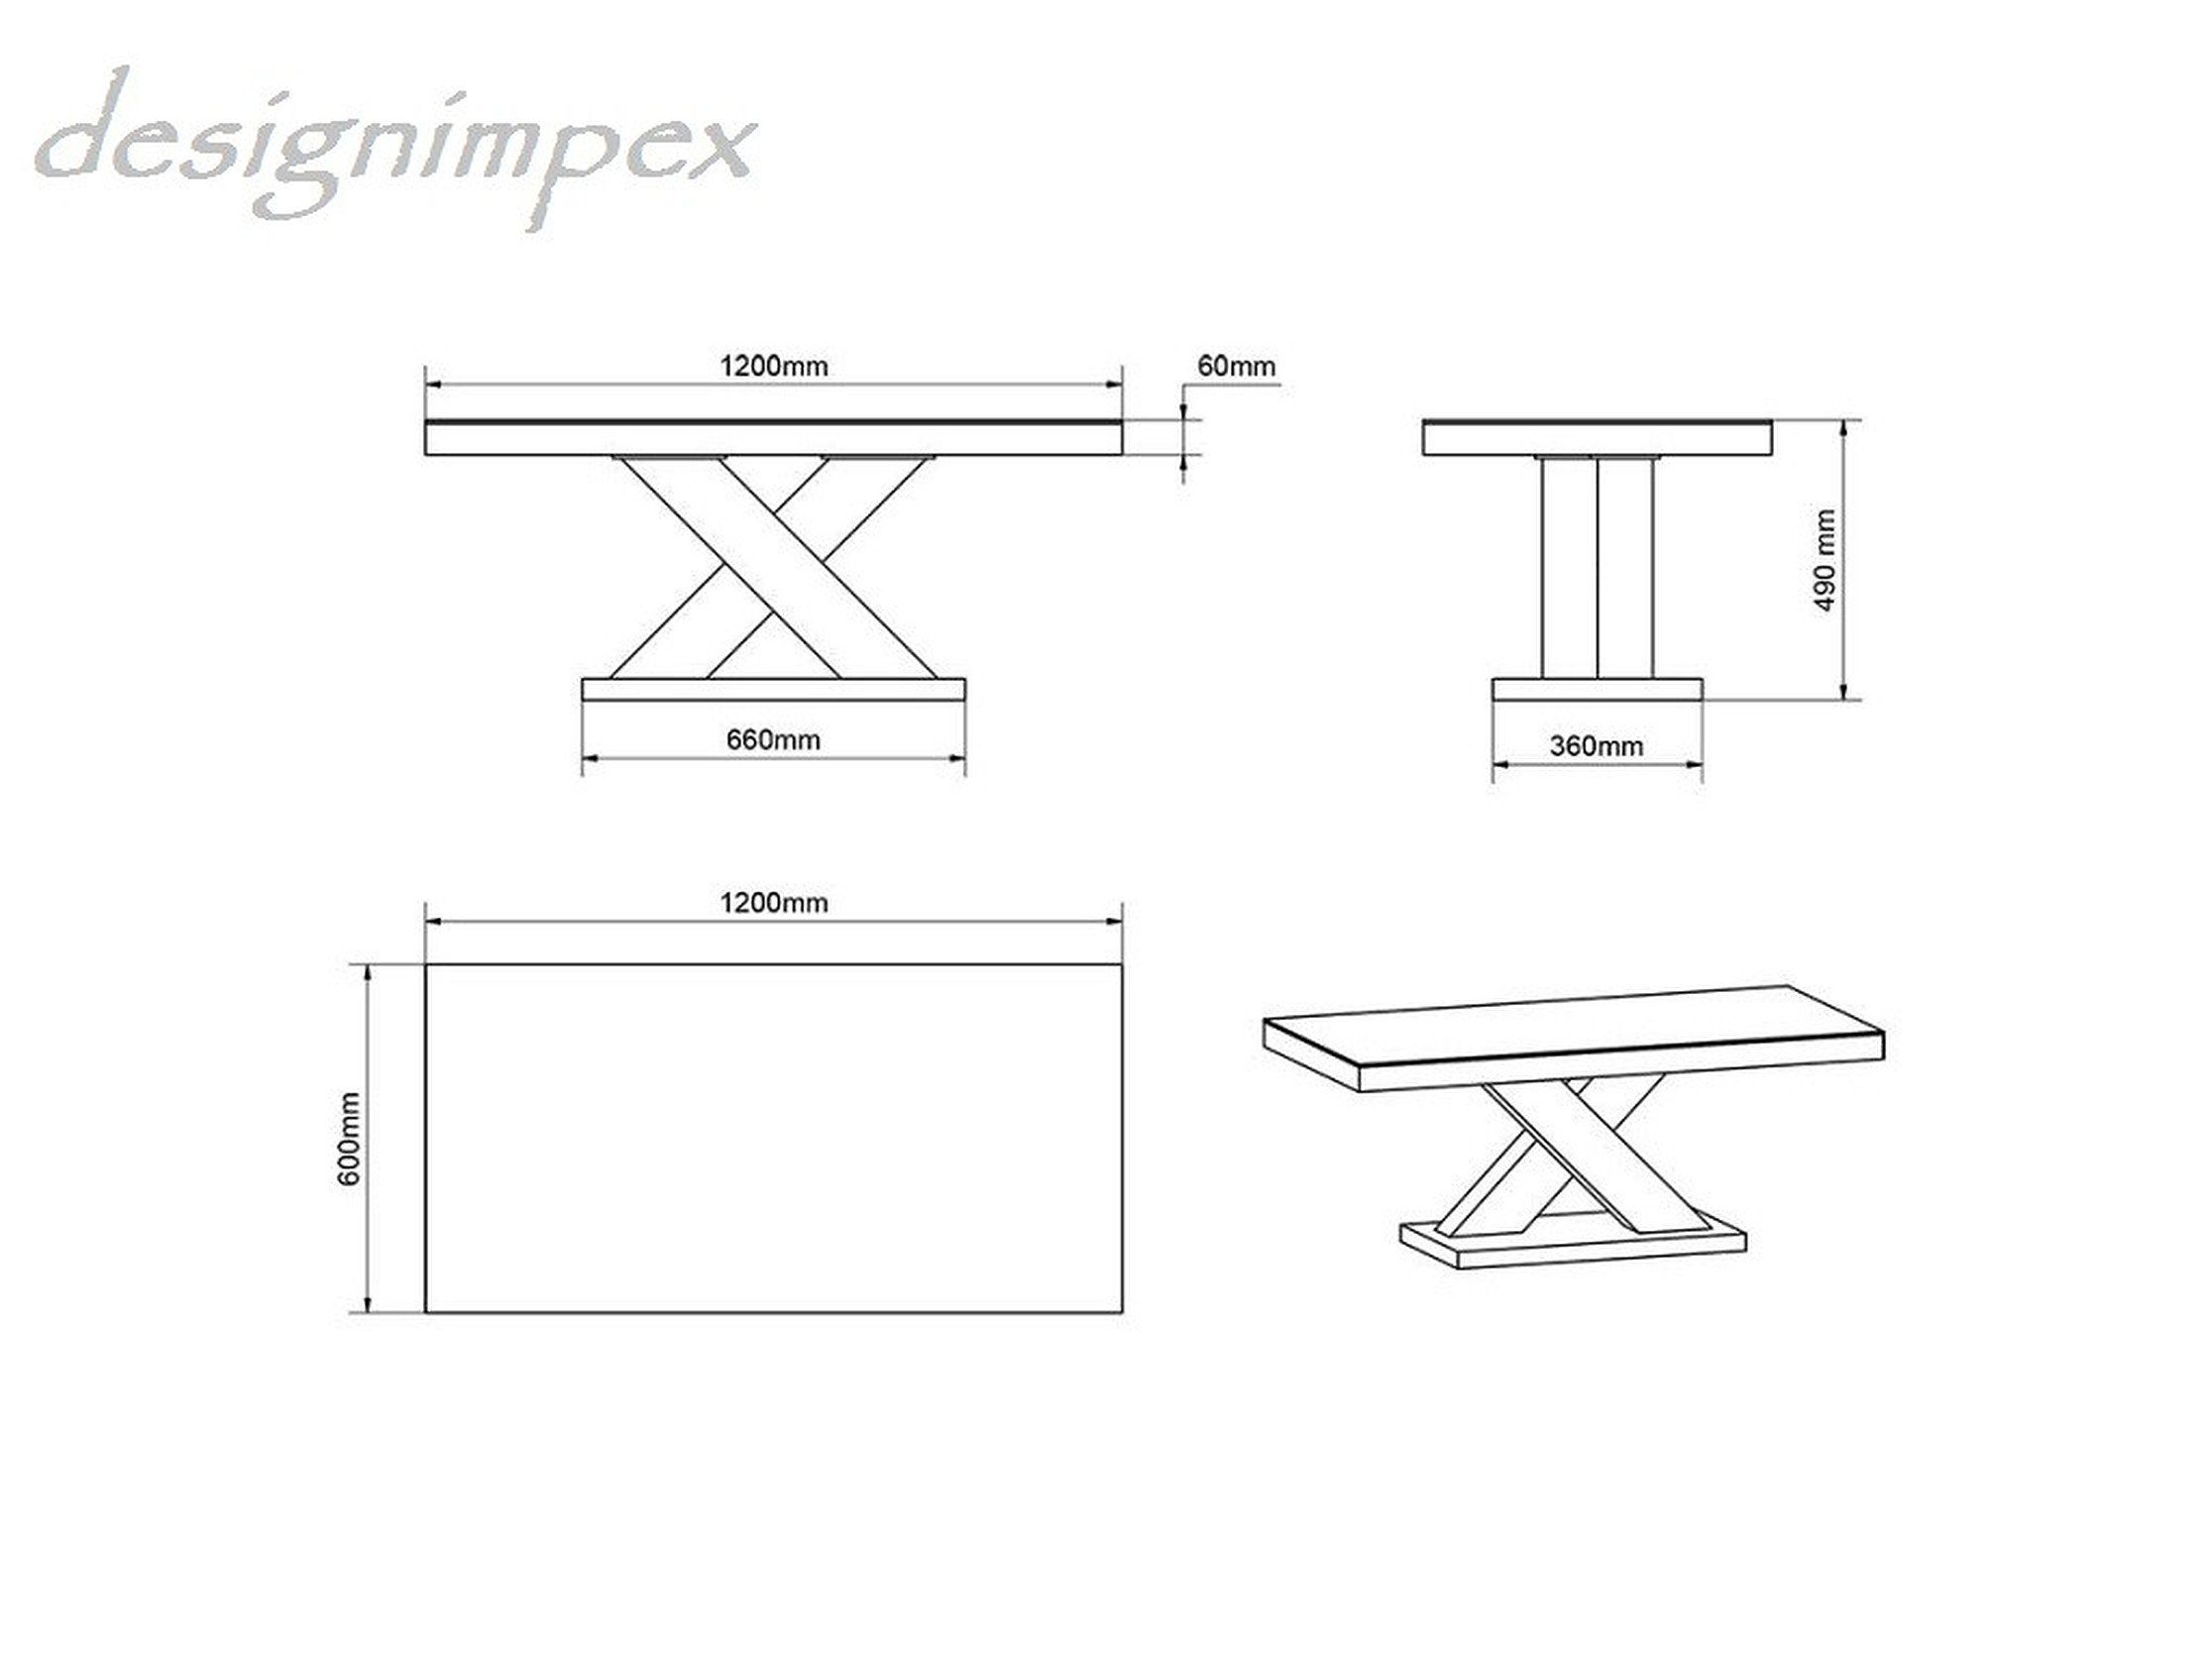 Hochglanz Highgloss Wohnzimmertisch Tisch Weiß - Design Hochglanz Beton designimpex Weiß H-888 Beton Couchtisch /